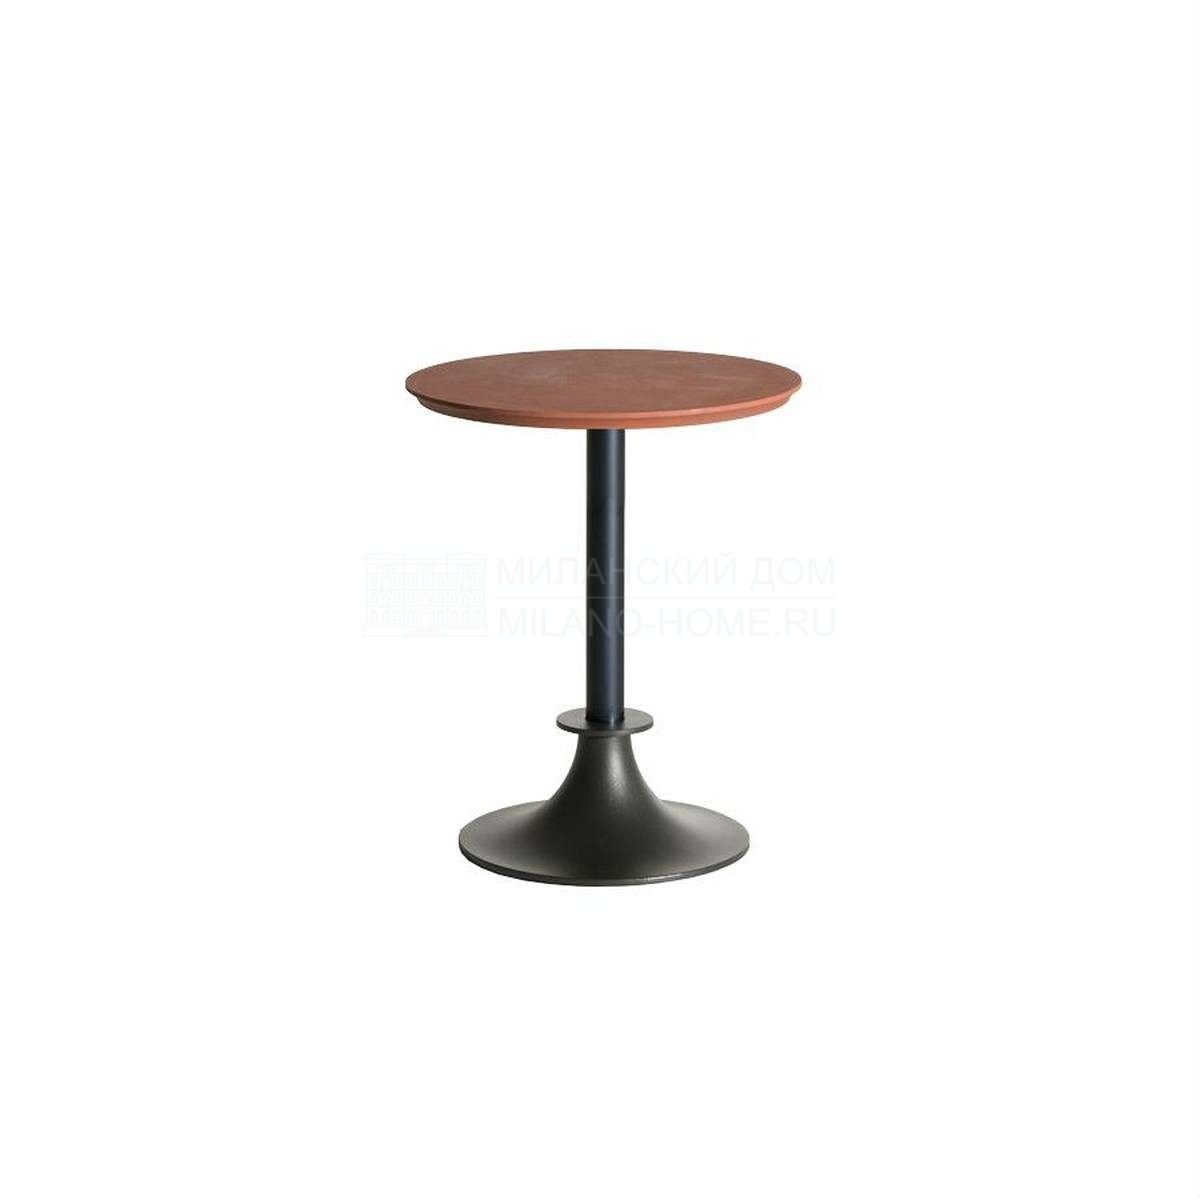 Круглый стол Lord yi round table из Италии фабрики DRIADE